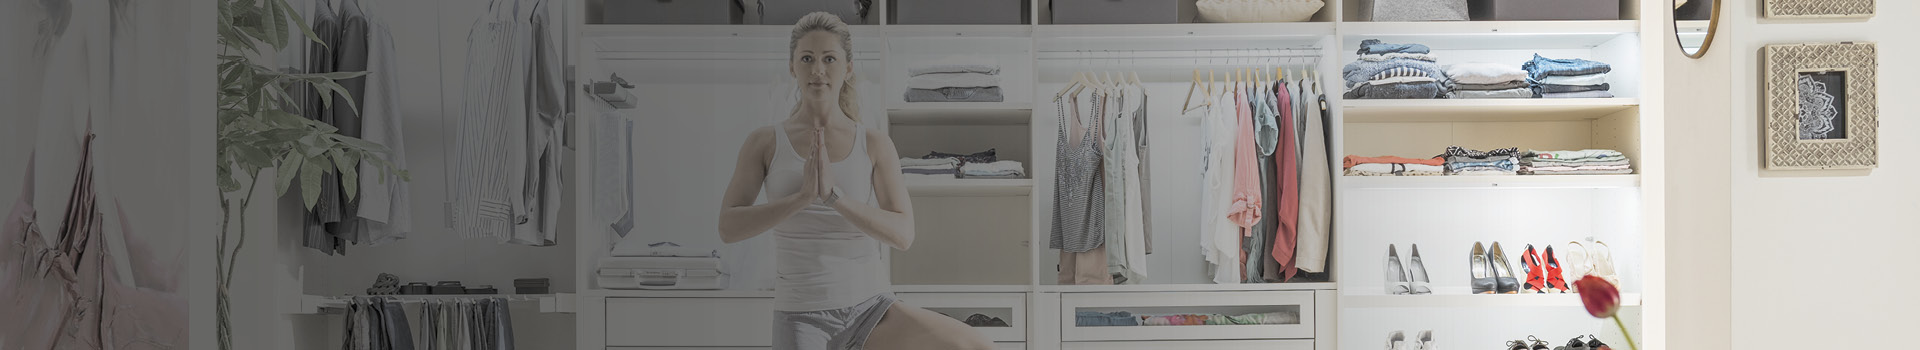 Frau vor Kleiderschrank Yoga